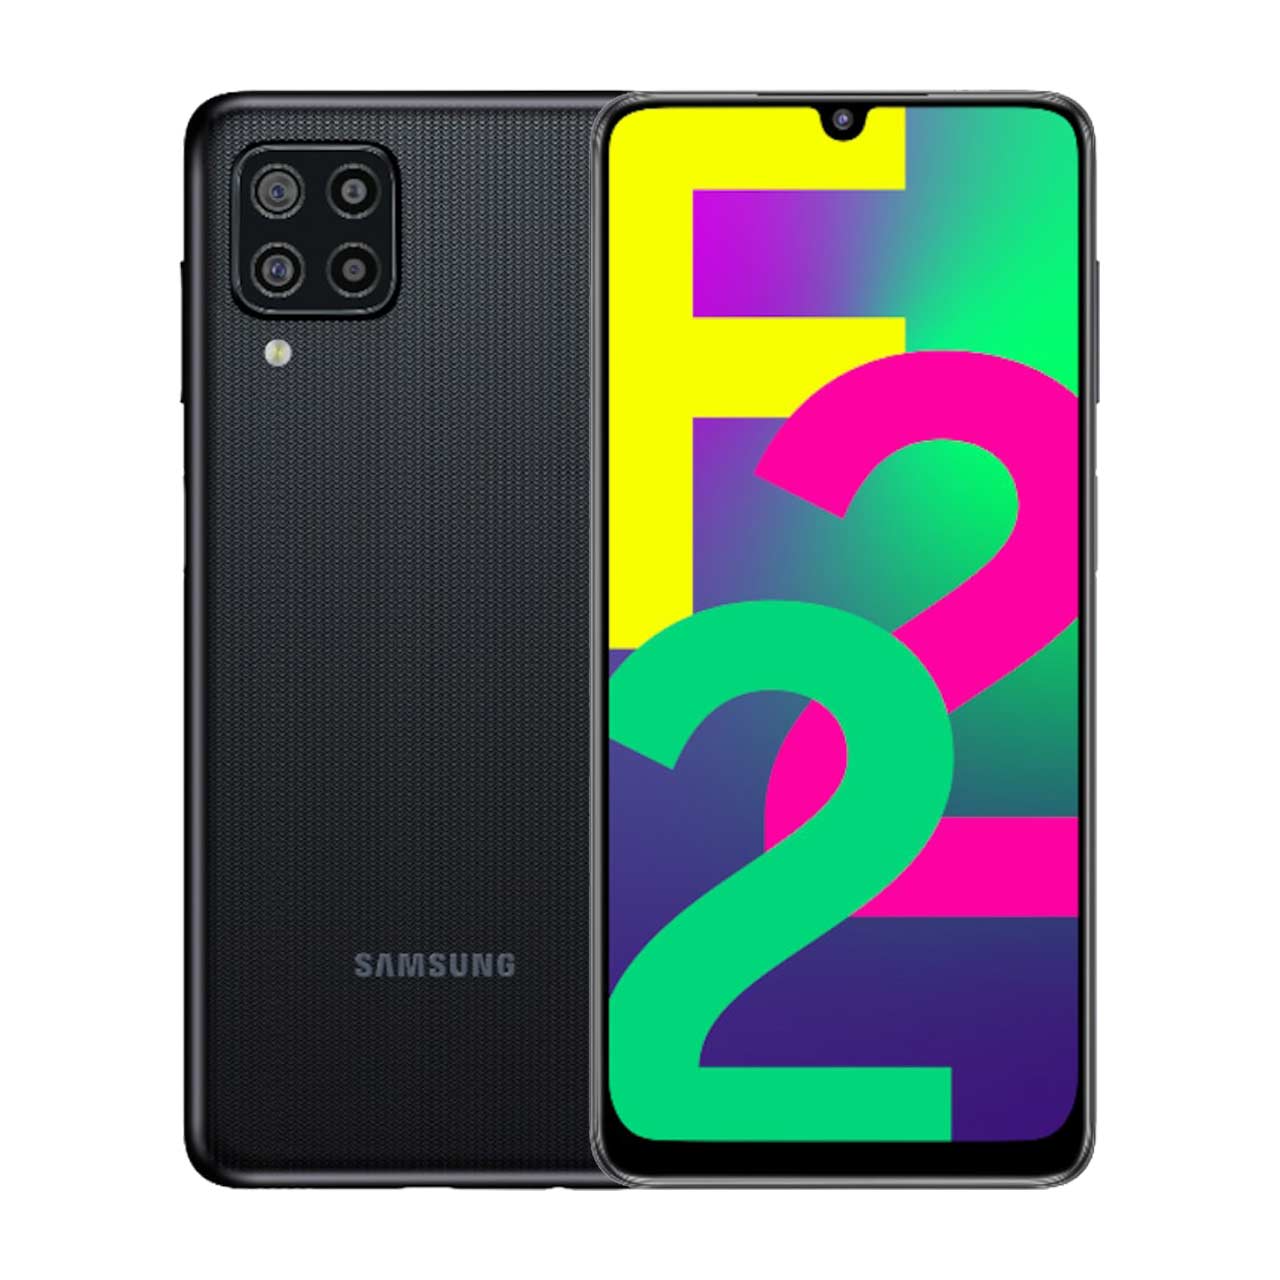  گوشی موبایل سامسونگ مدل Galaxy F22 (RAM 4) ظرفیت 64GB - مشکی     